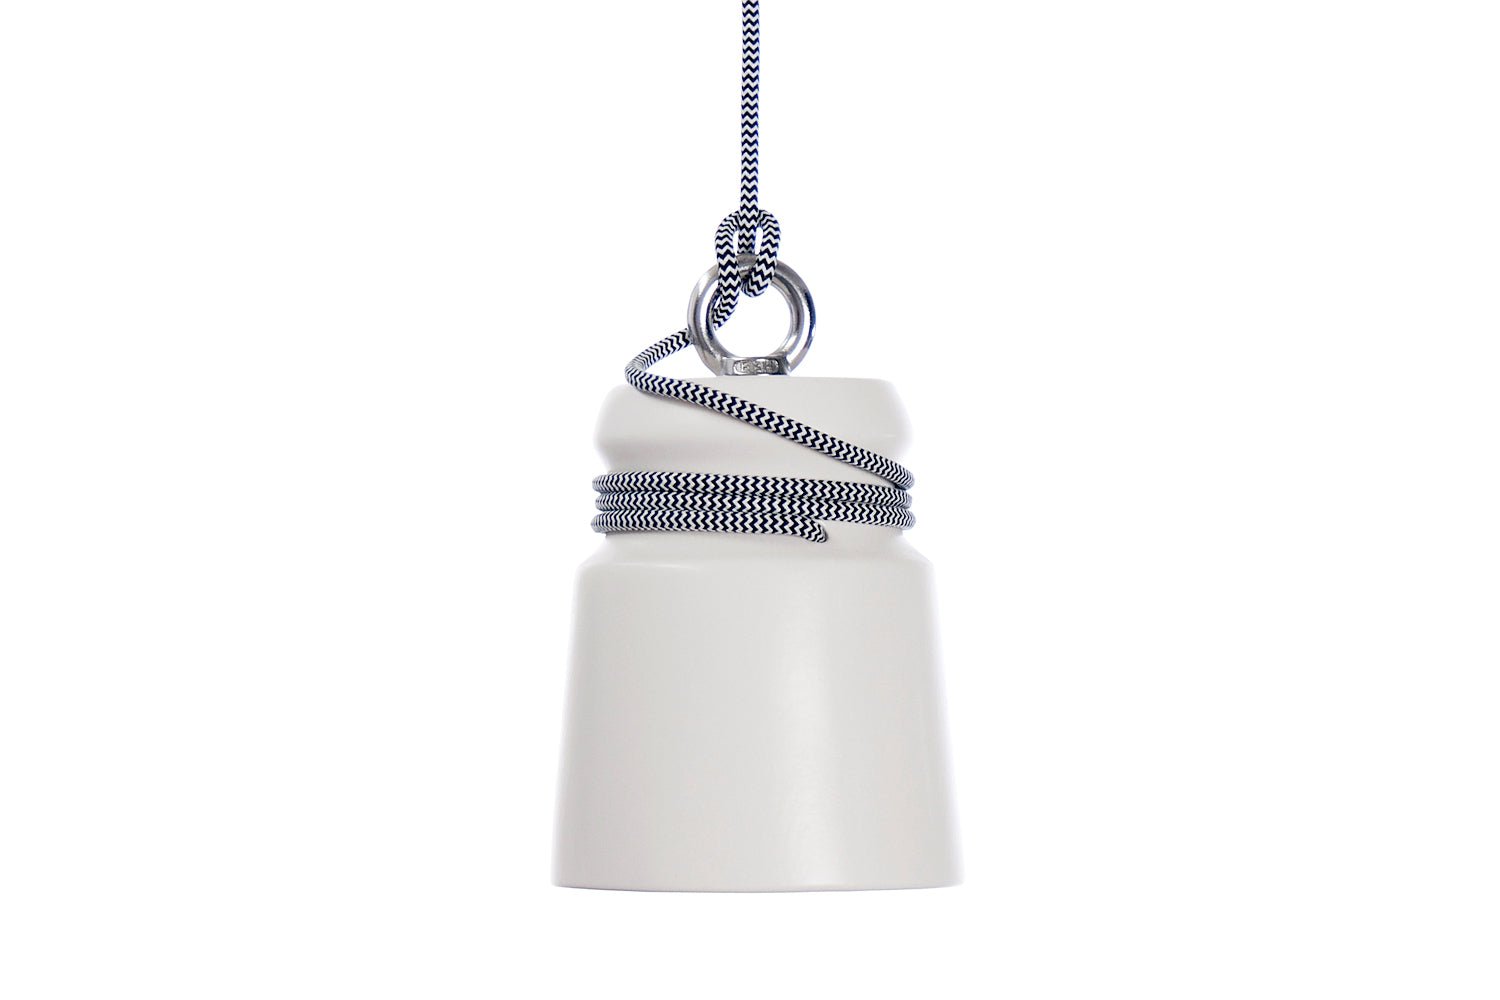 Cable light hanglamp small wit met grijs snoer - gimmiiPatrick Hartog